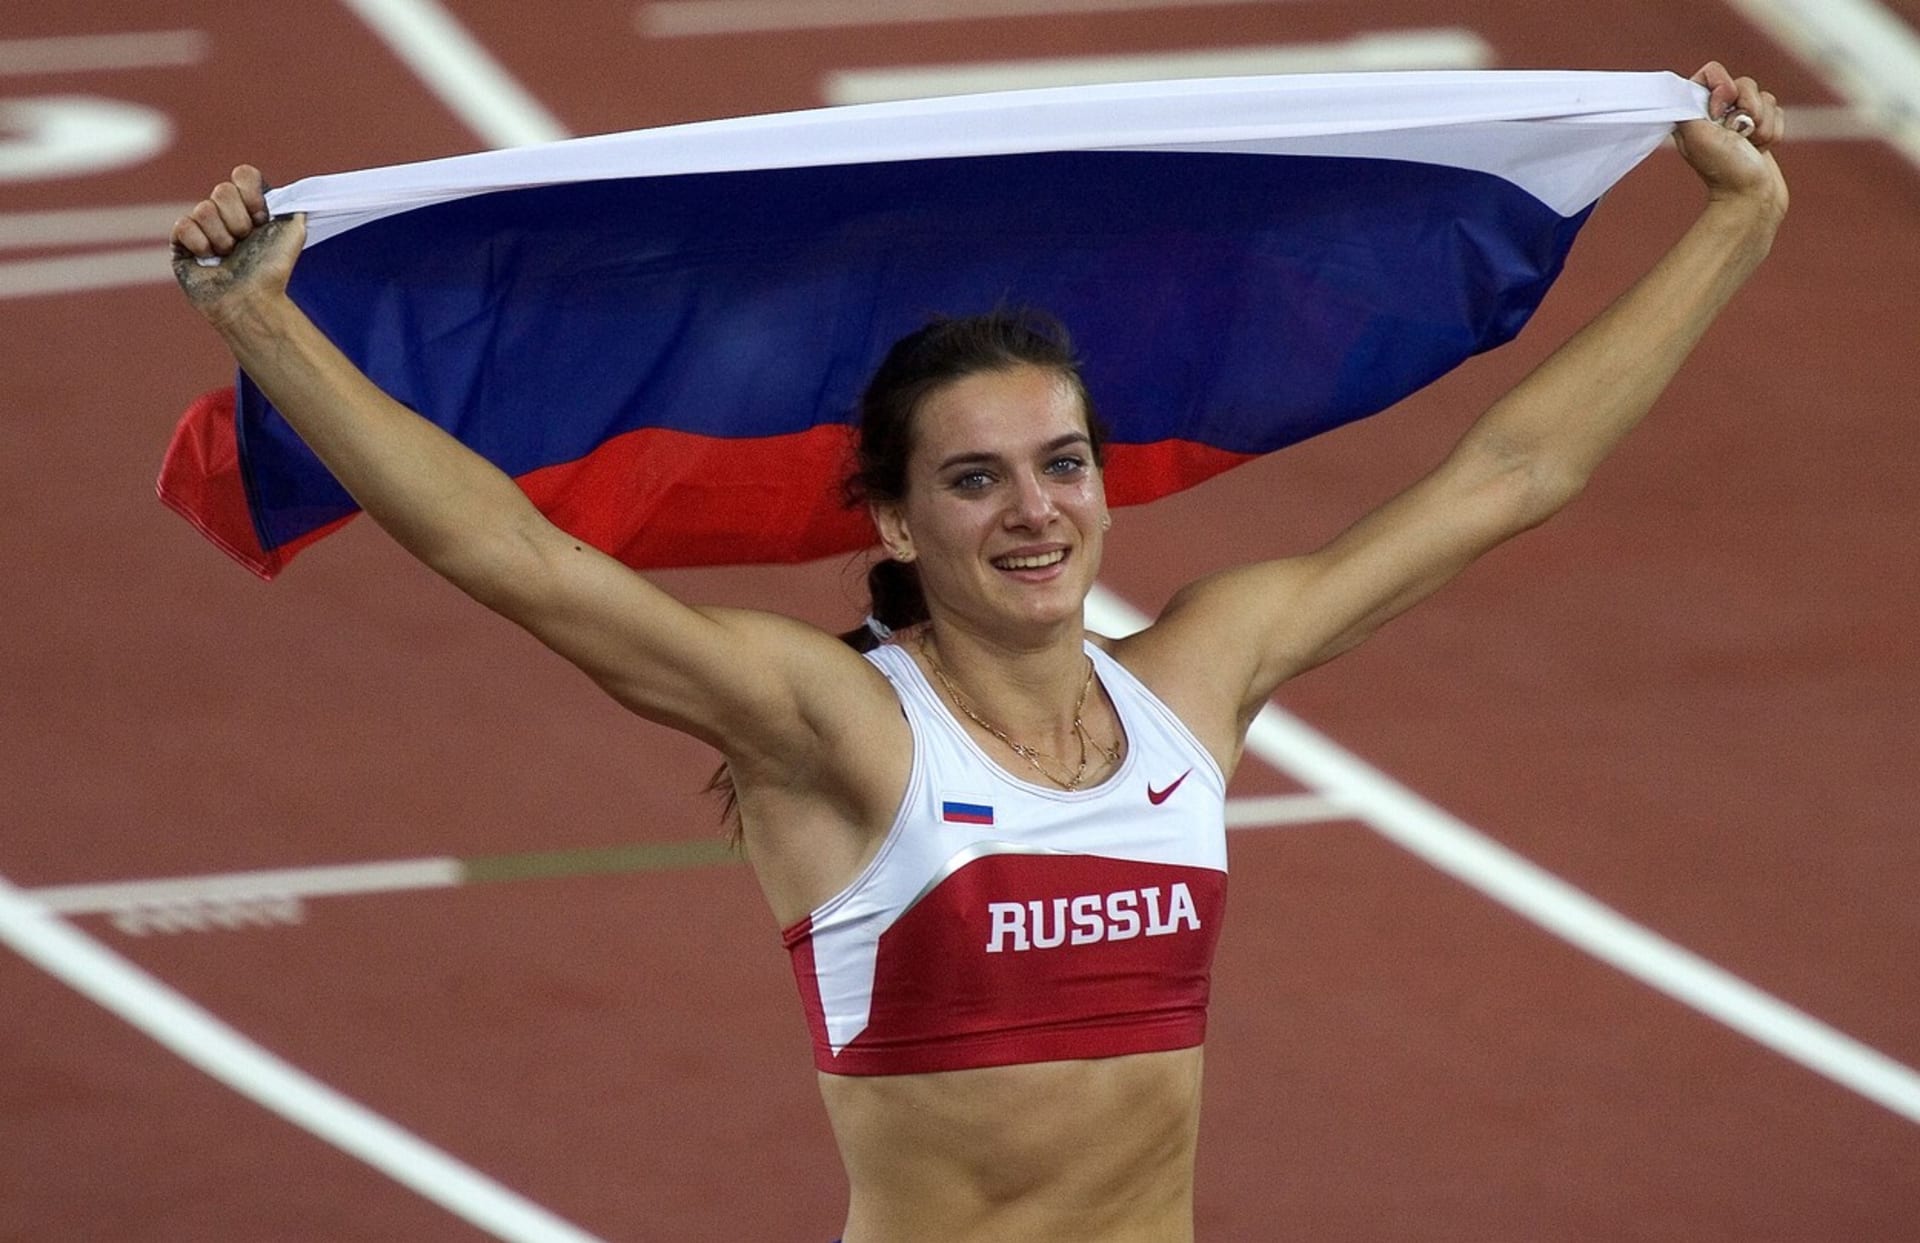 Opravdu jsou politika a sport dvěma světy, které se nikde neprotínají? Třeba ruská atletka Jelena Isinbajevová patřila k velkým Putinovým podporovatelům.